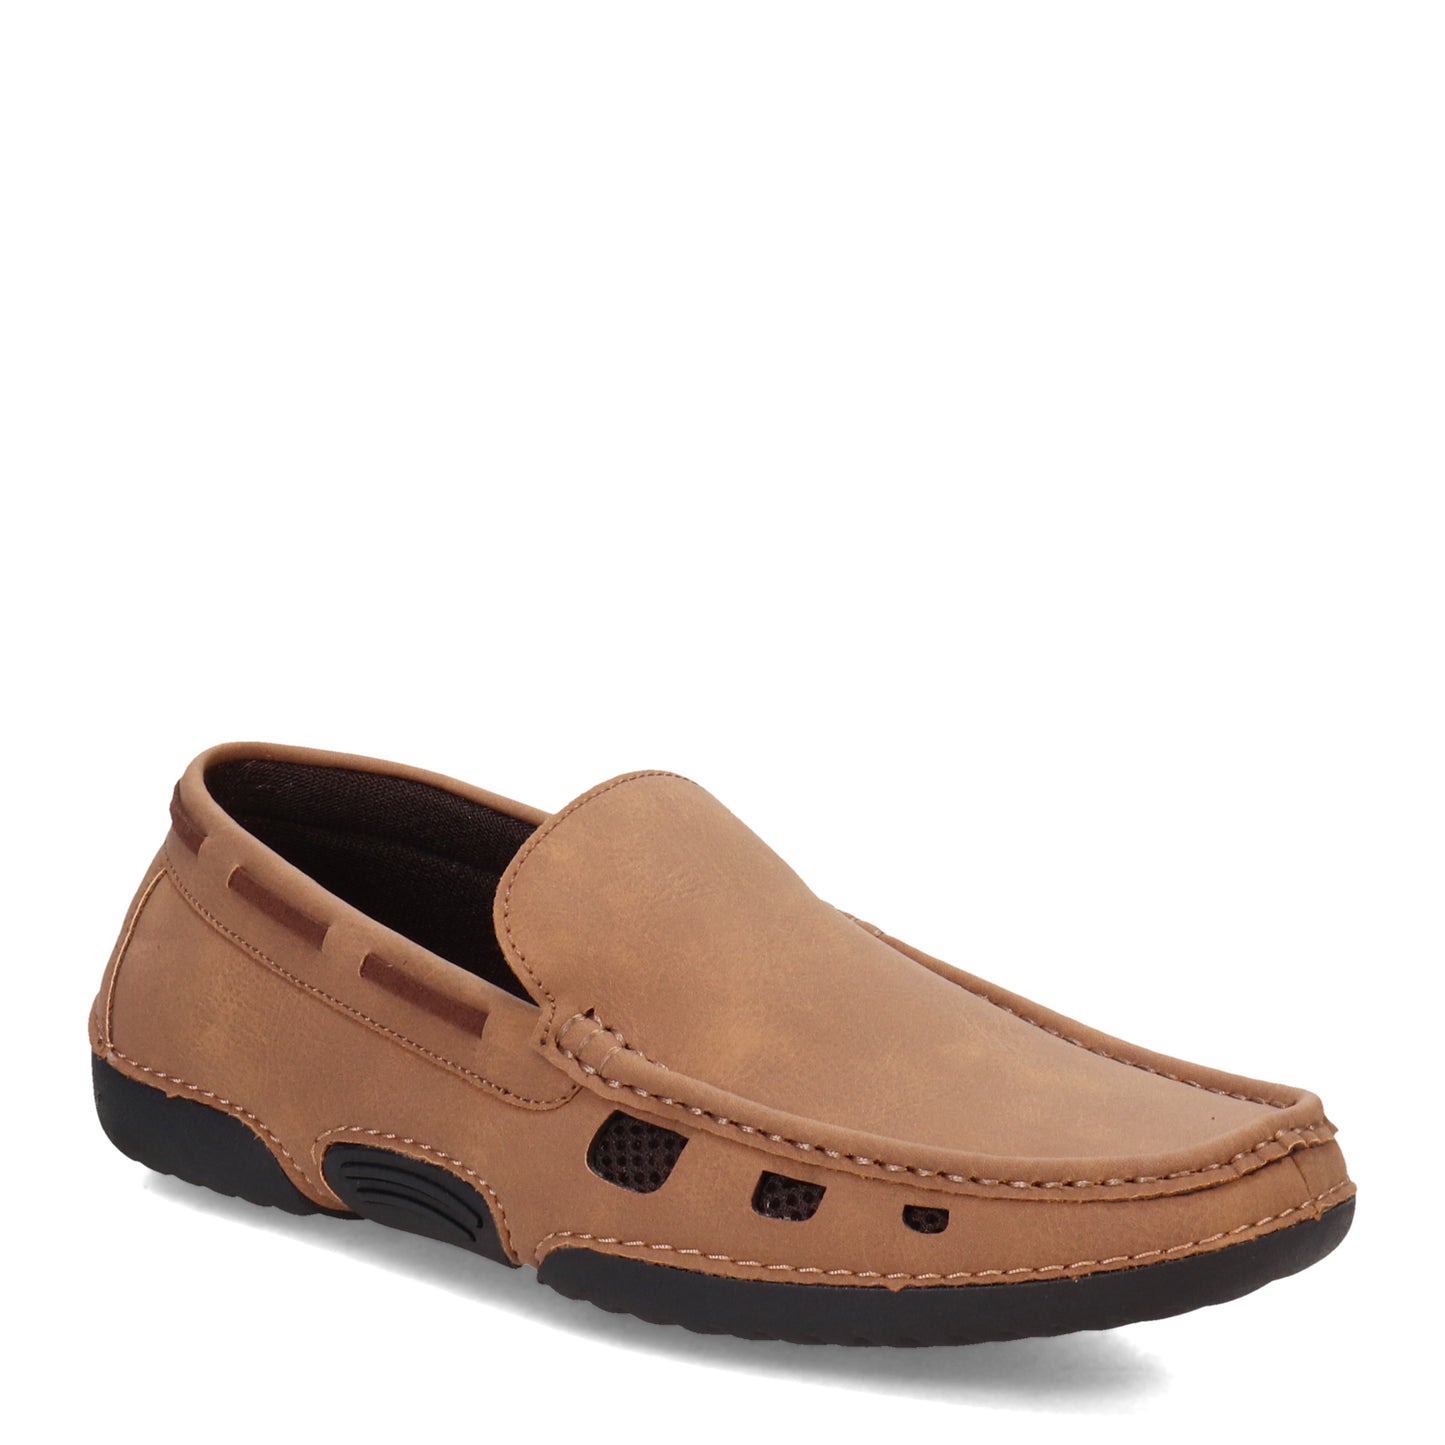 Peltz Shoes  Men's Stacy Adams Delray Loafer Tan 25578-238